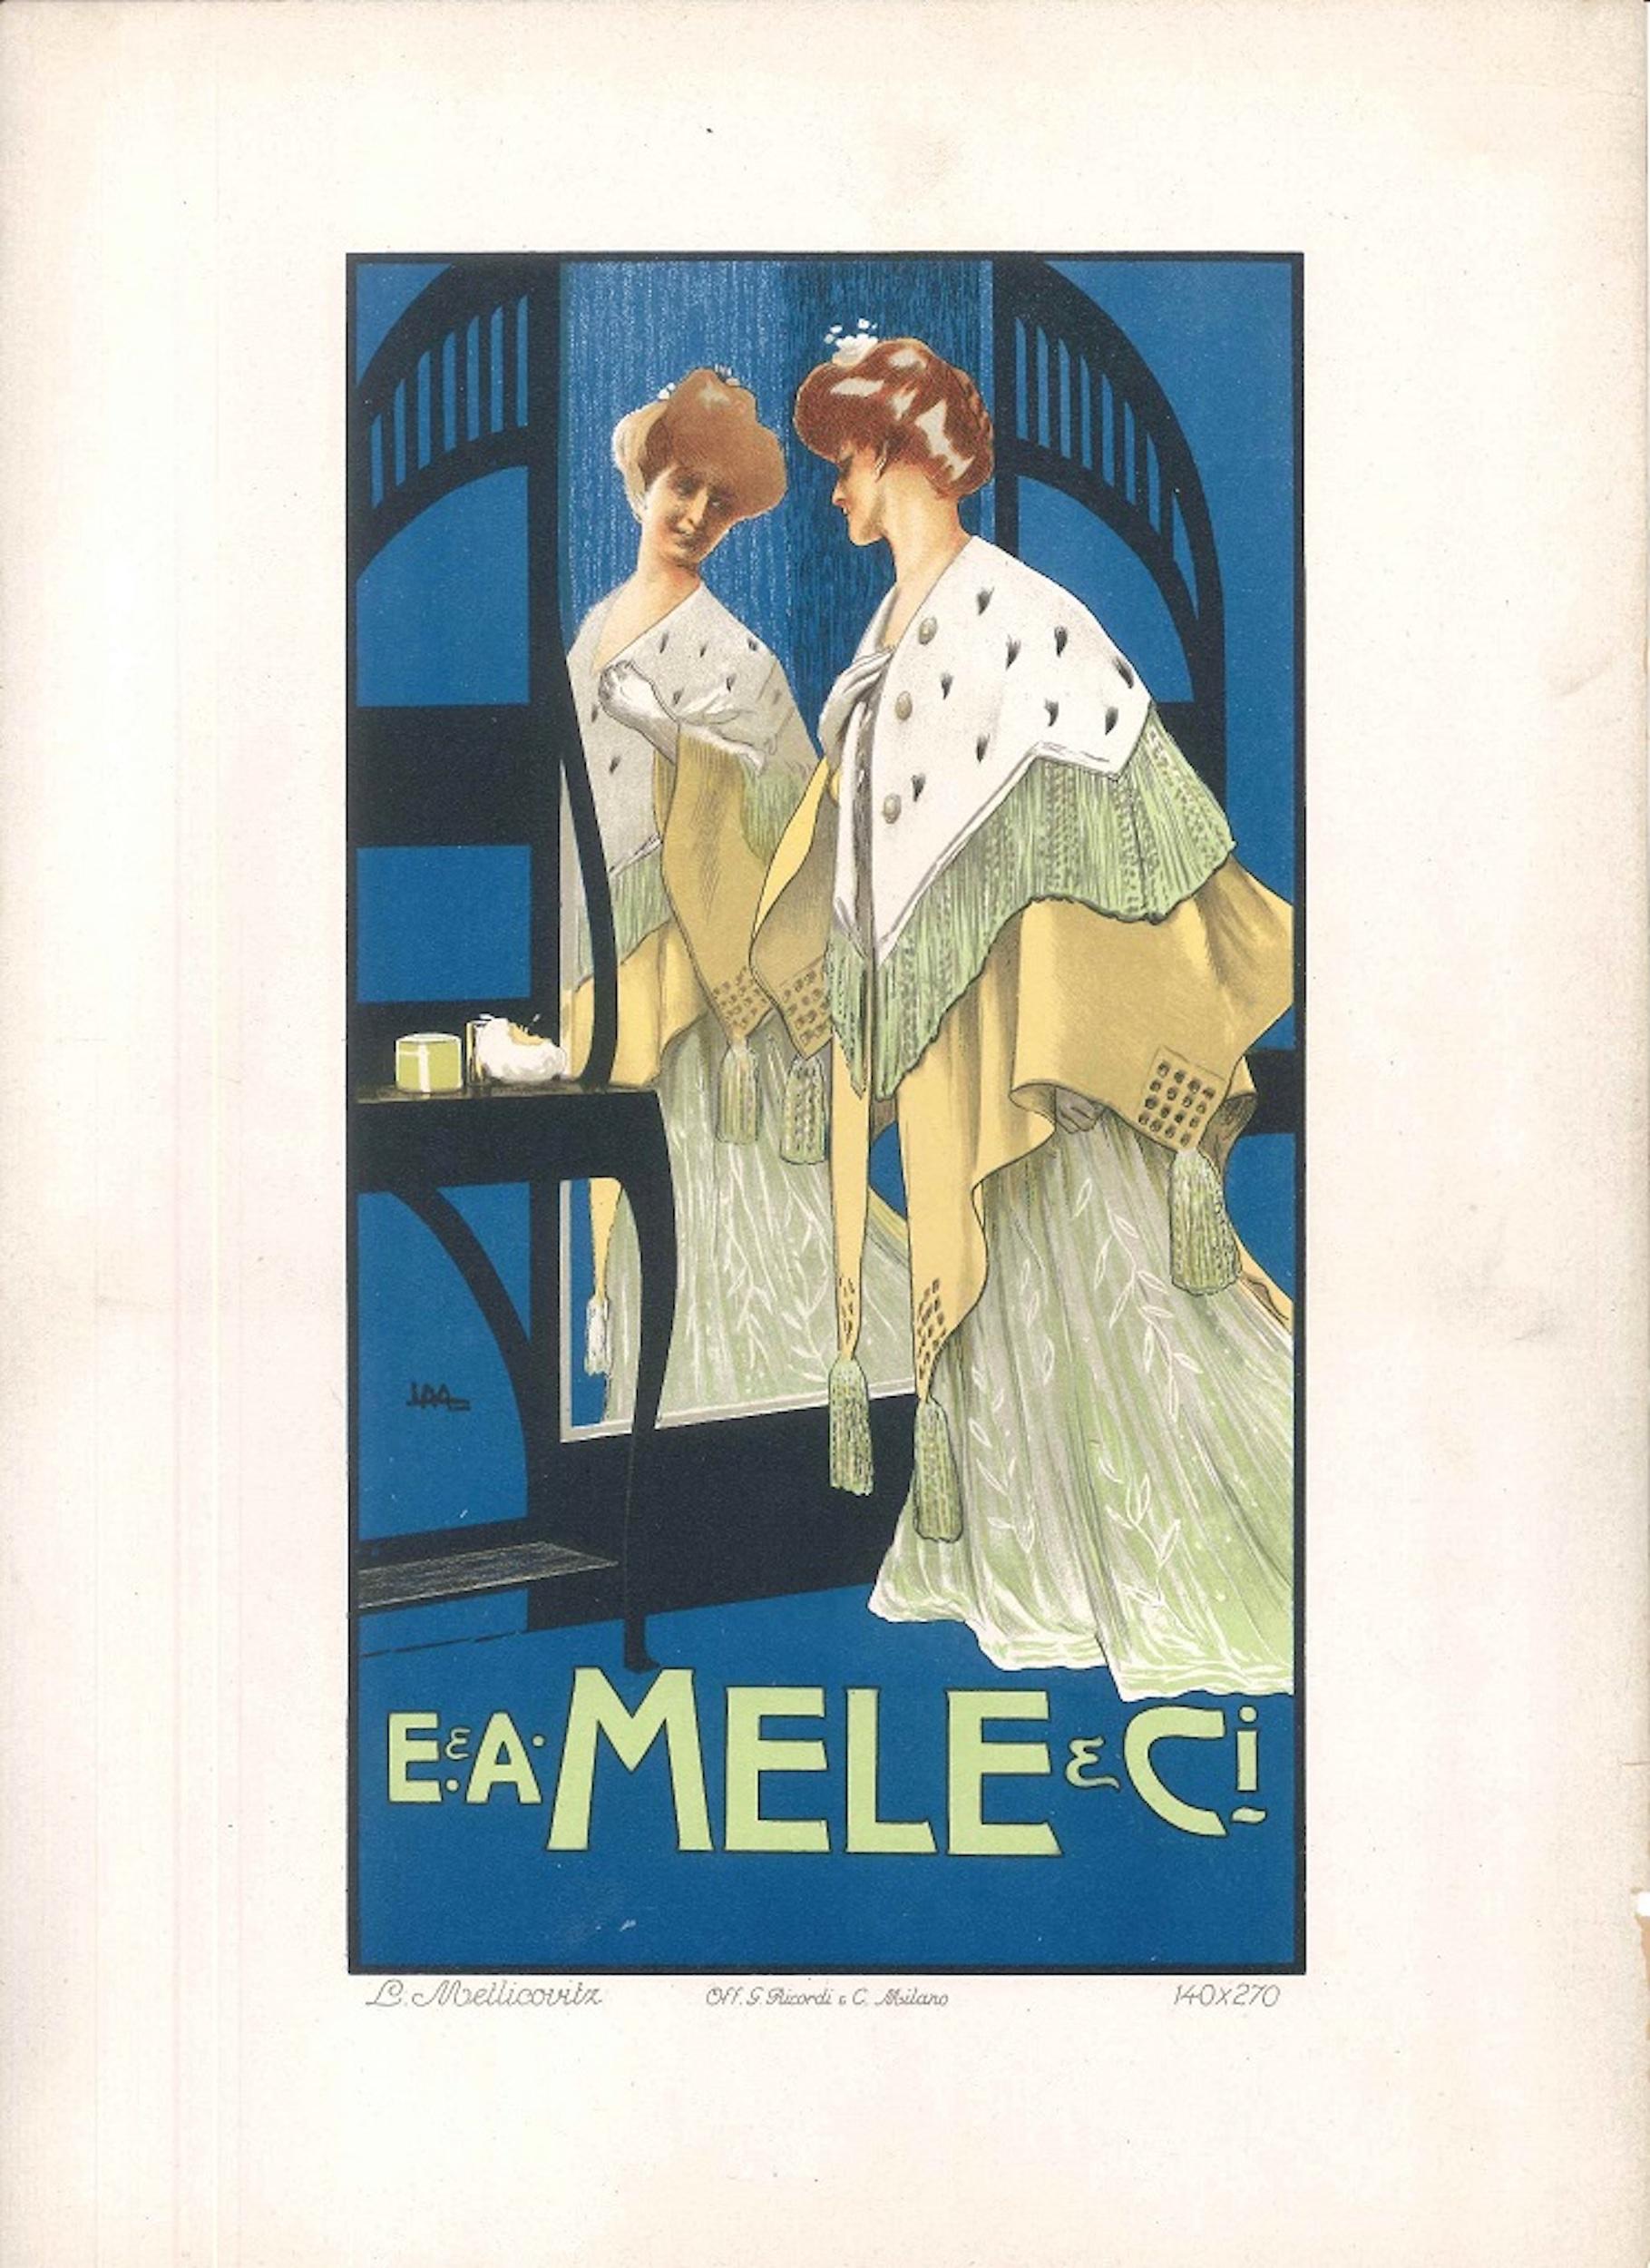 Mele - Lithographie publicitaire vintage de L. Metlicovitz - 1900 environ - Print de Leopoldo Metlicovitz